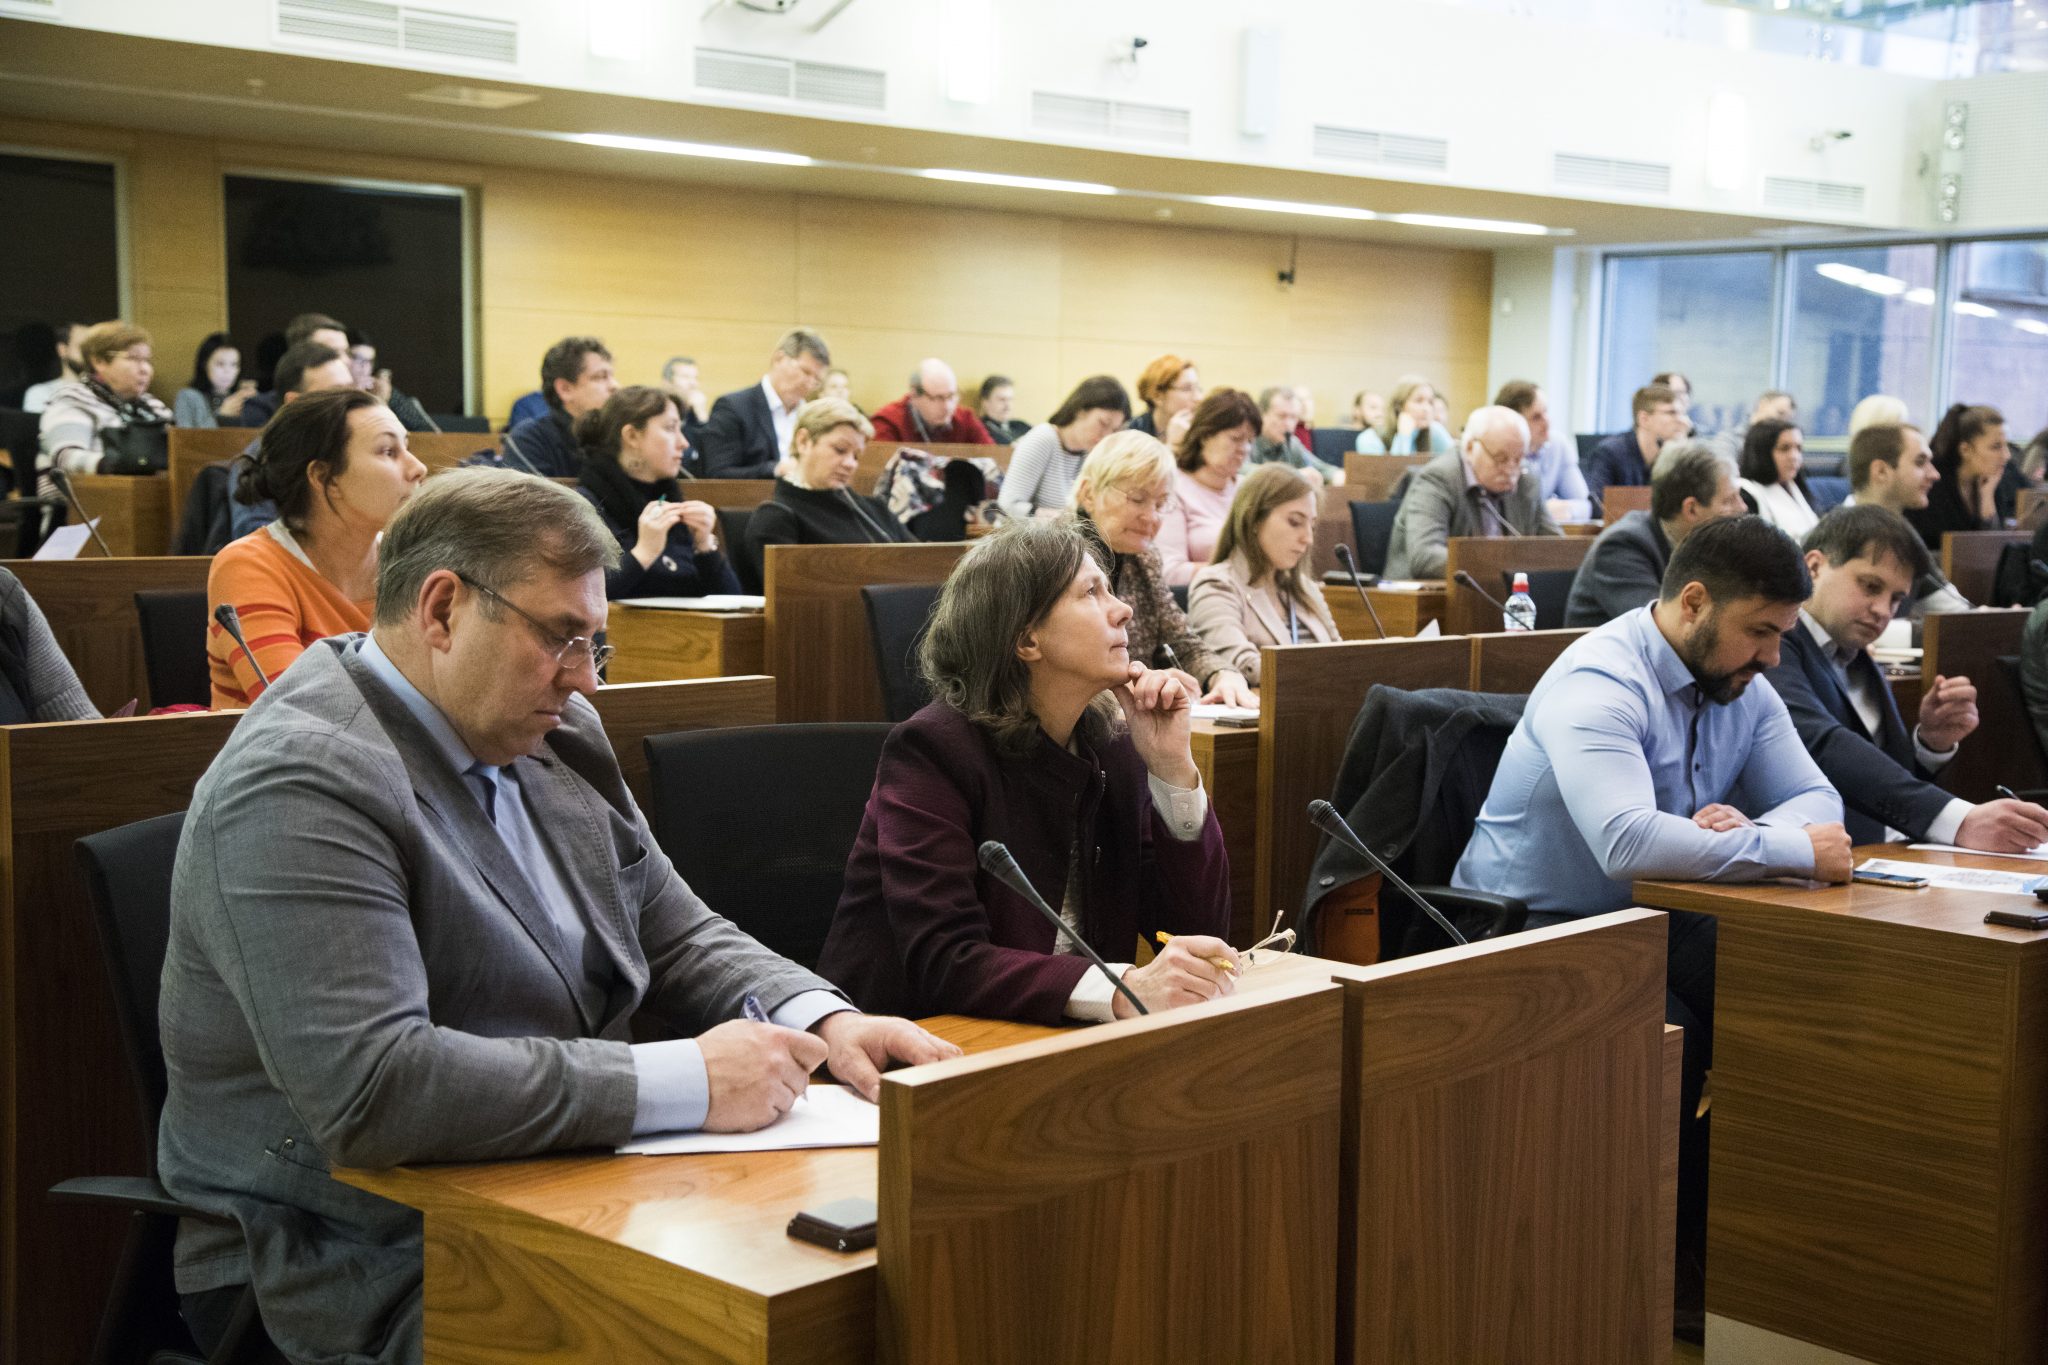 Vairāk nekā 80 namīpašnieku piedalījās seminārā par Rīgas pašvaldības līdzfinansējuma saņemšanu kultūras pieminekļu saglabāšanai